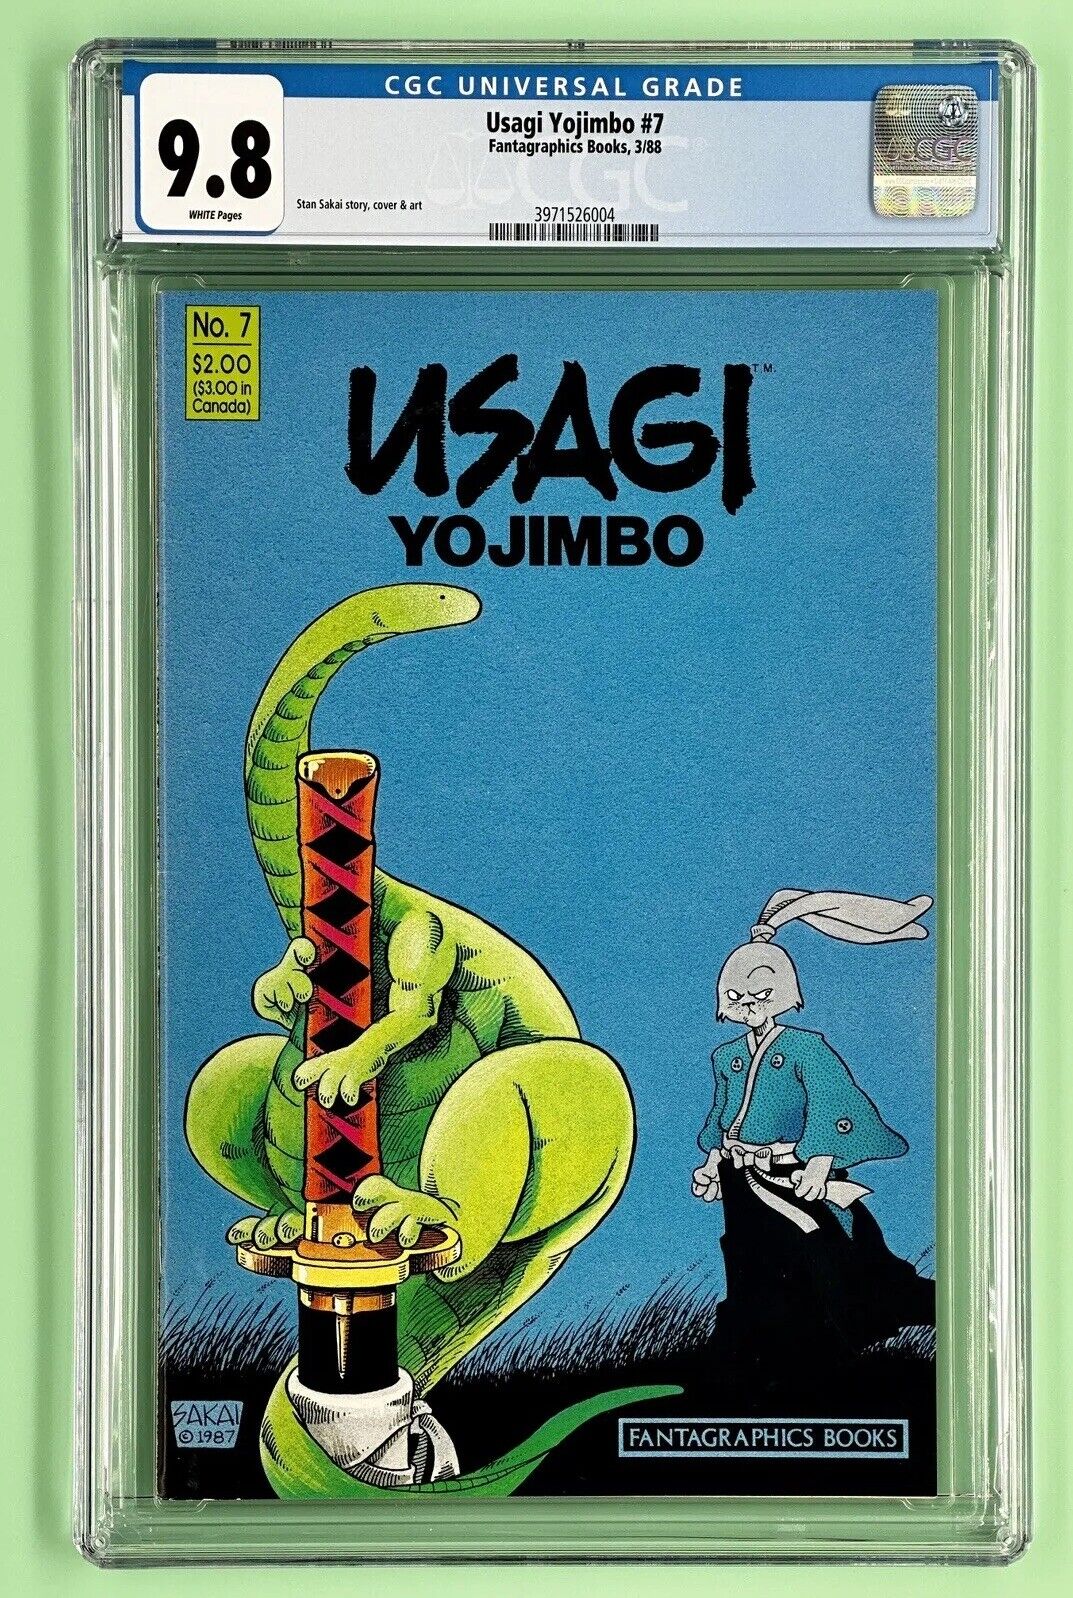 Usagi Yojimbo #7 (CGC 9.8) 1988, White Pages, Stan Sakai